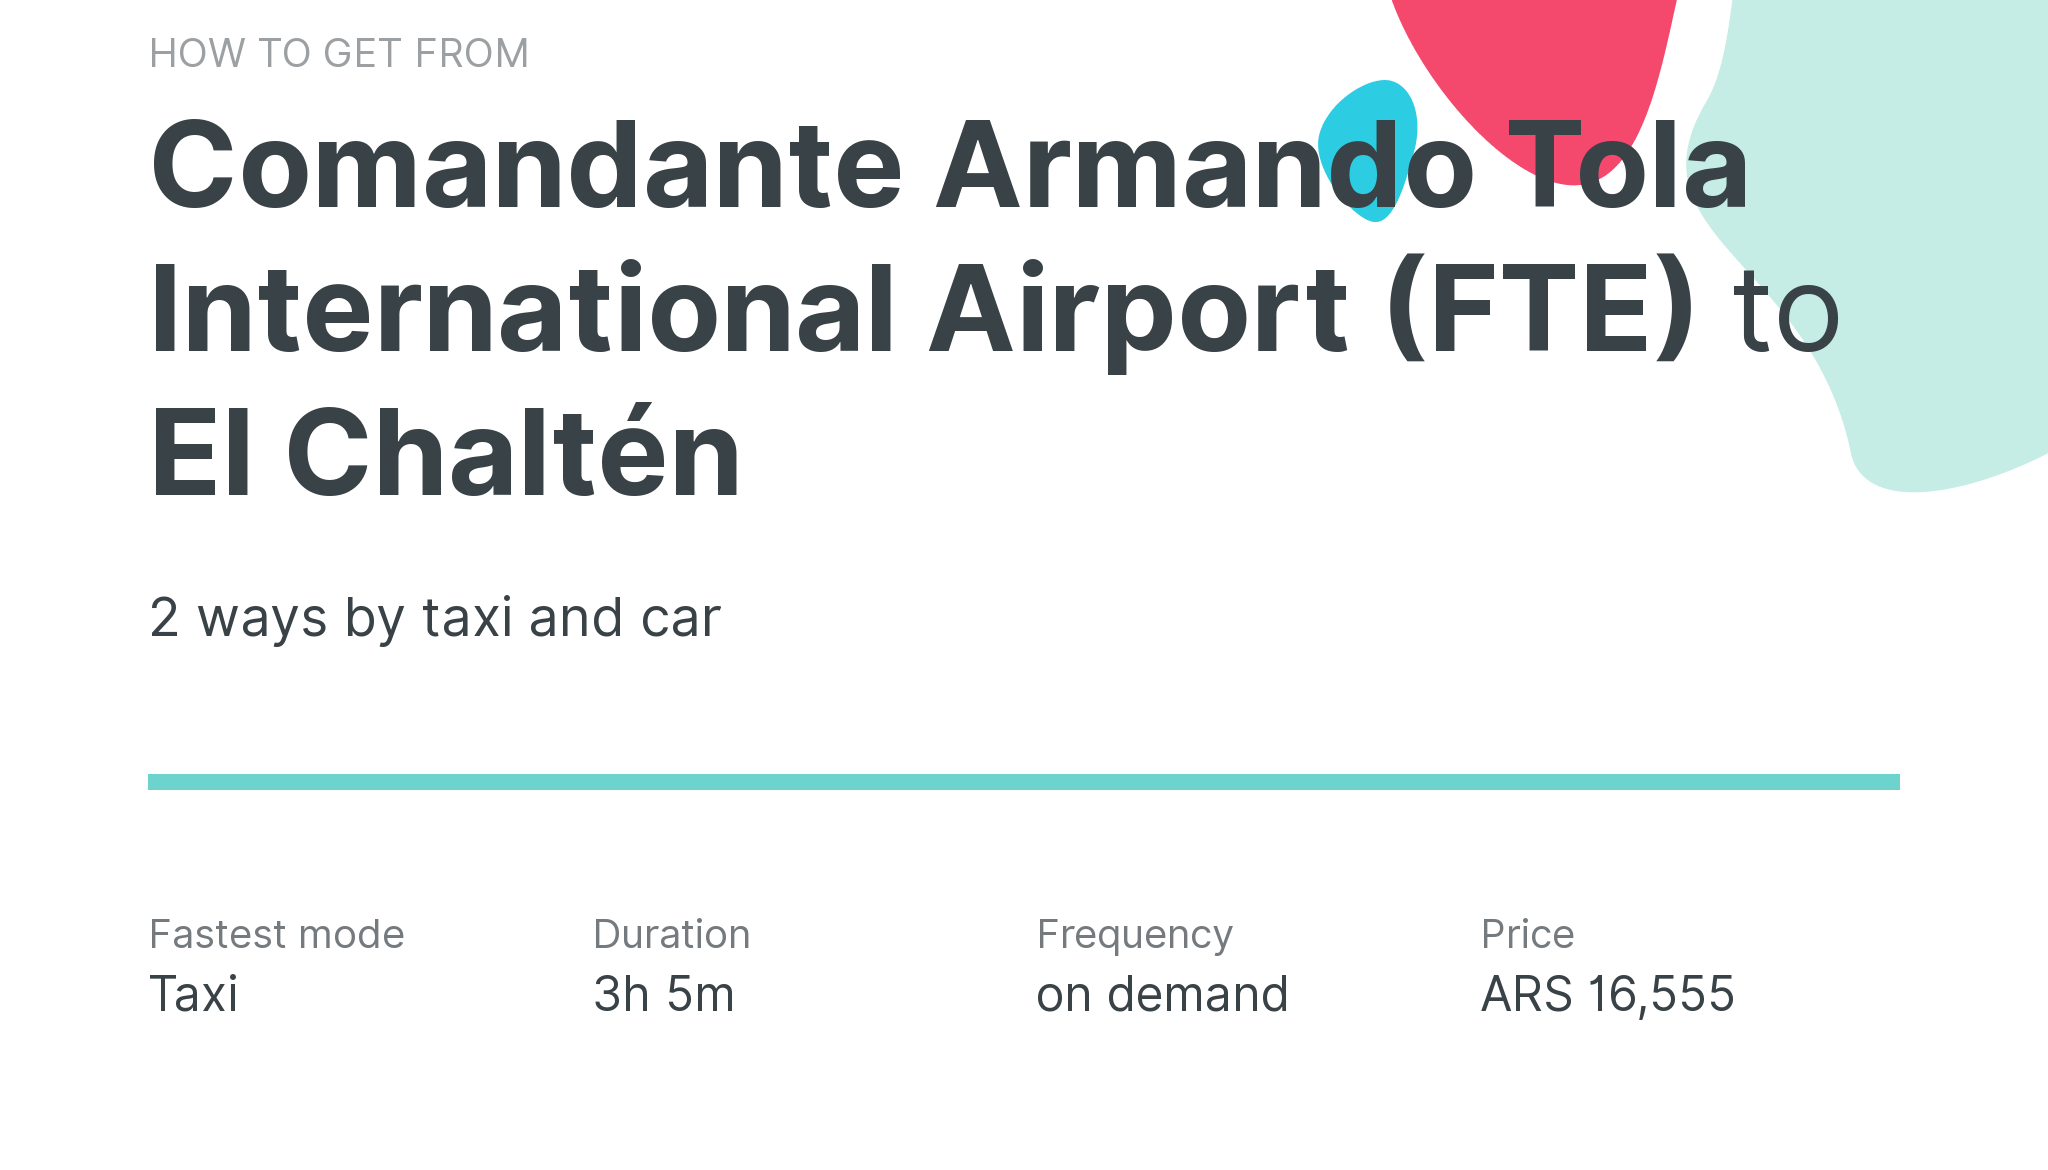 How do I get from Comandante Armando Tola International Airport (FTE) to El Chaltén